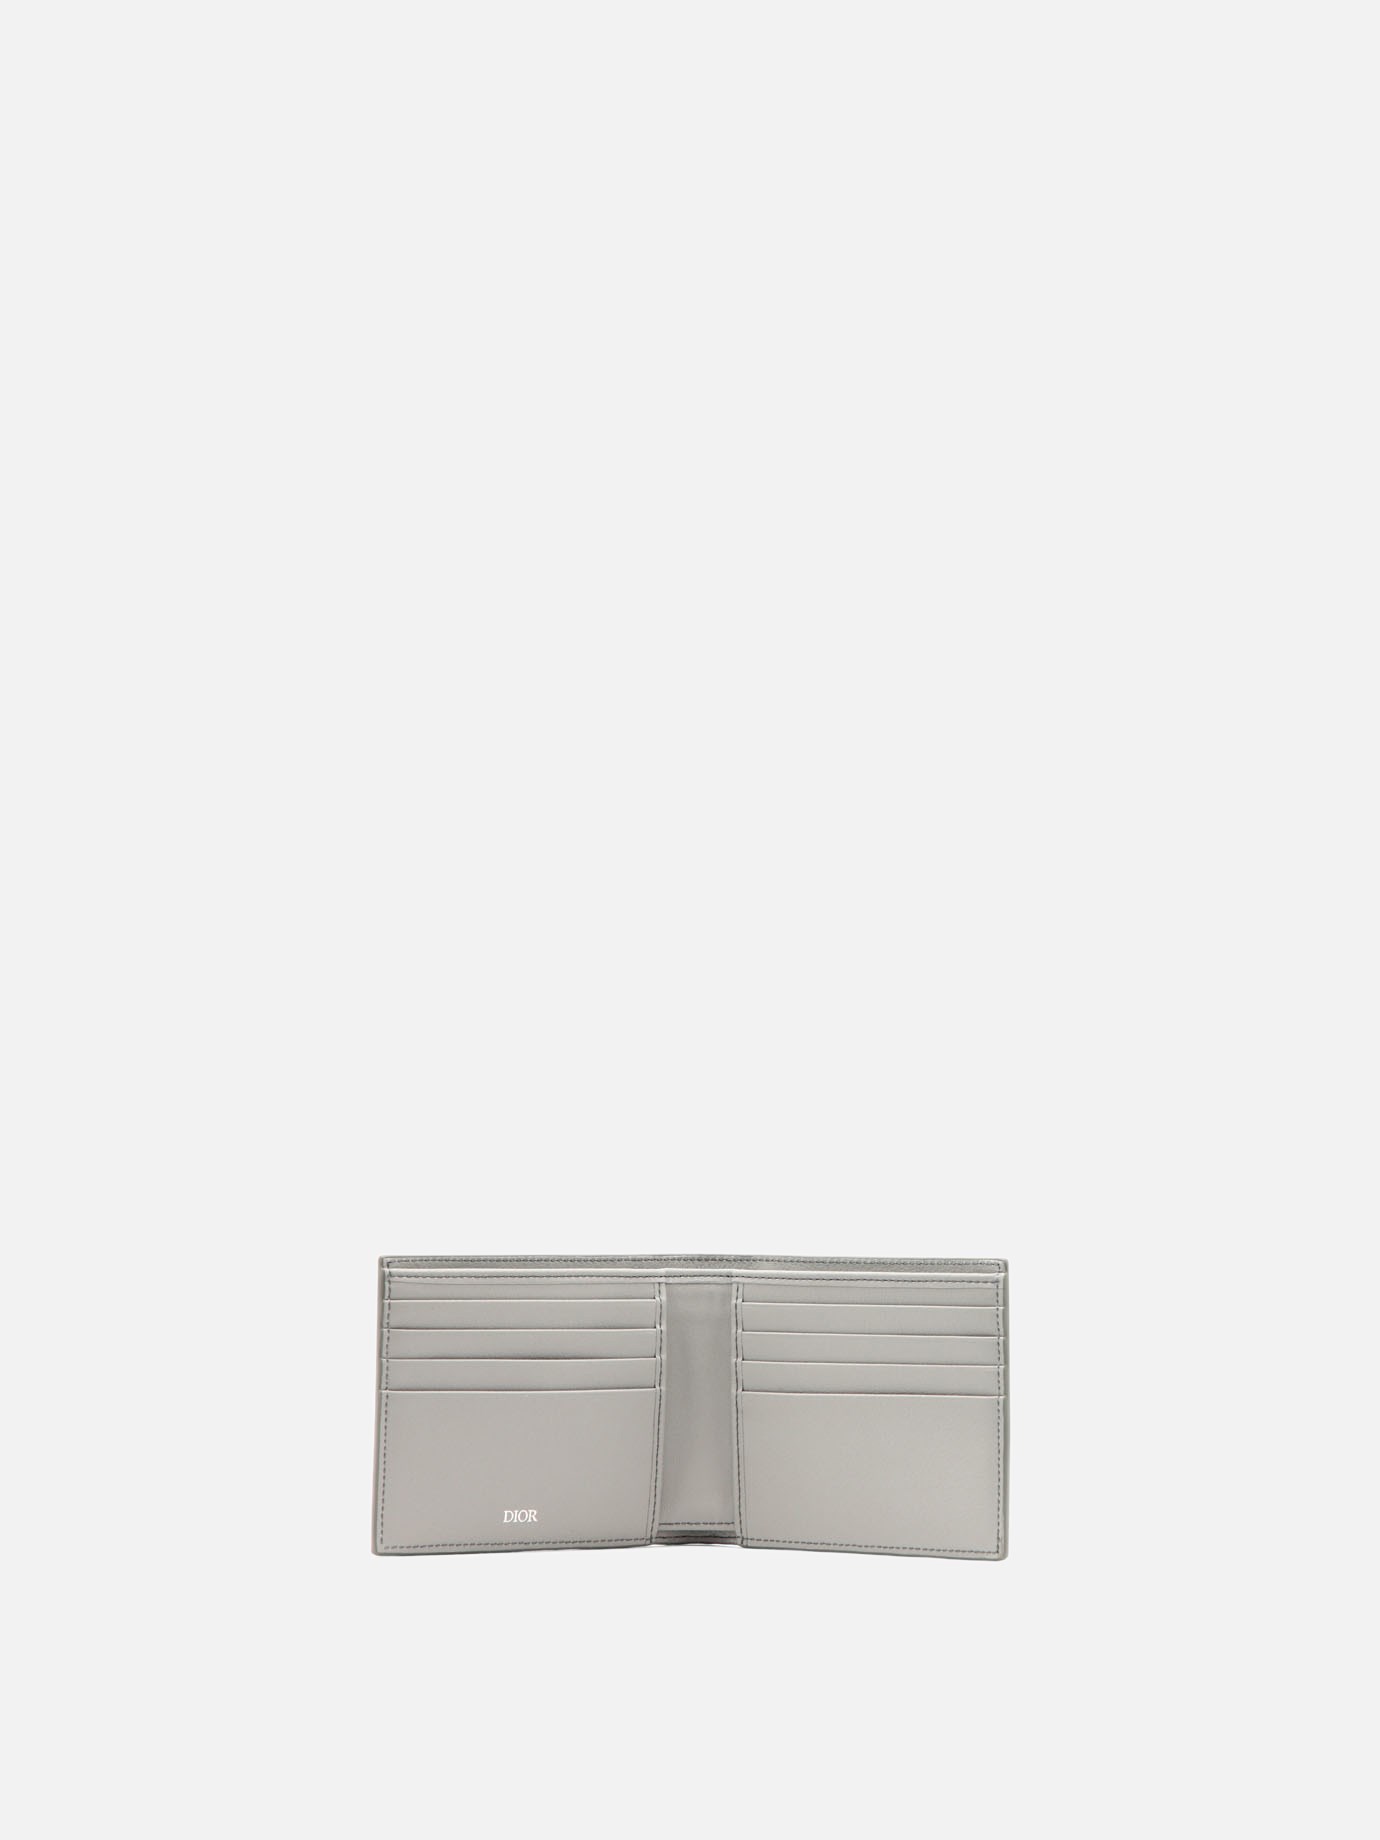  Dior Oblique Galaxy  wallet by Dior